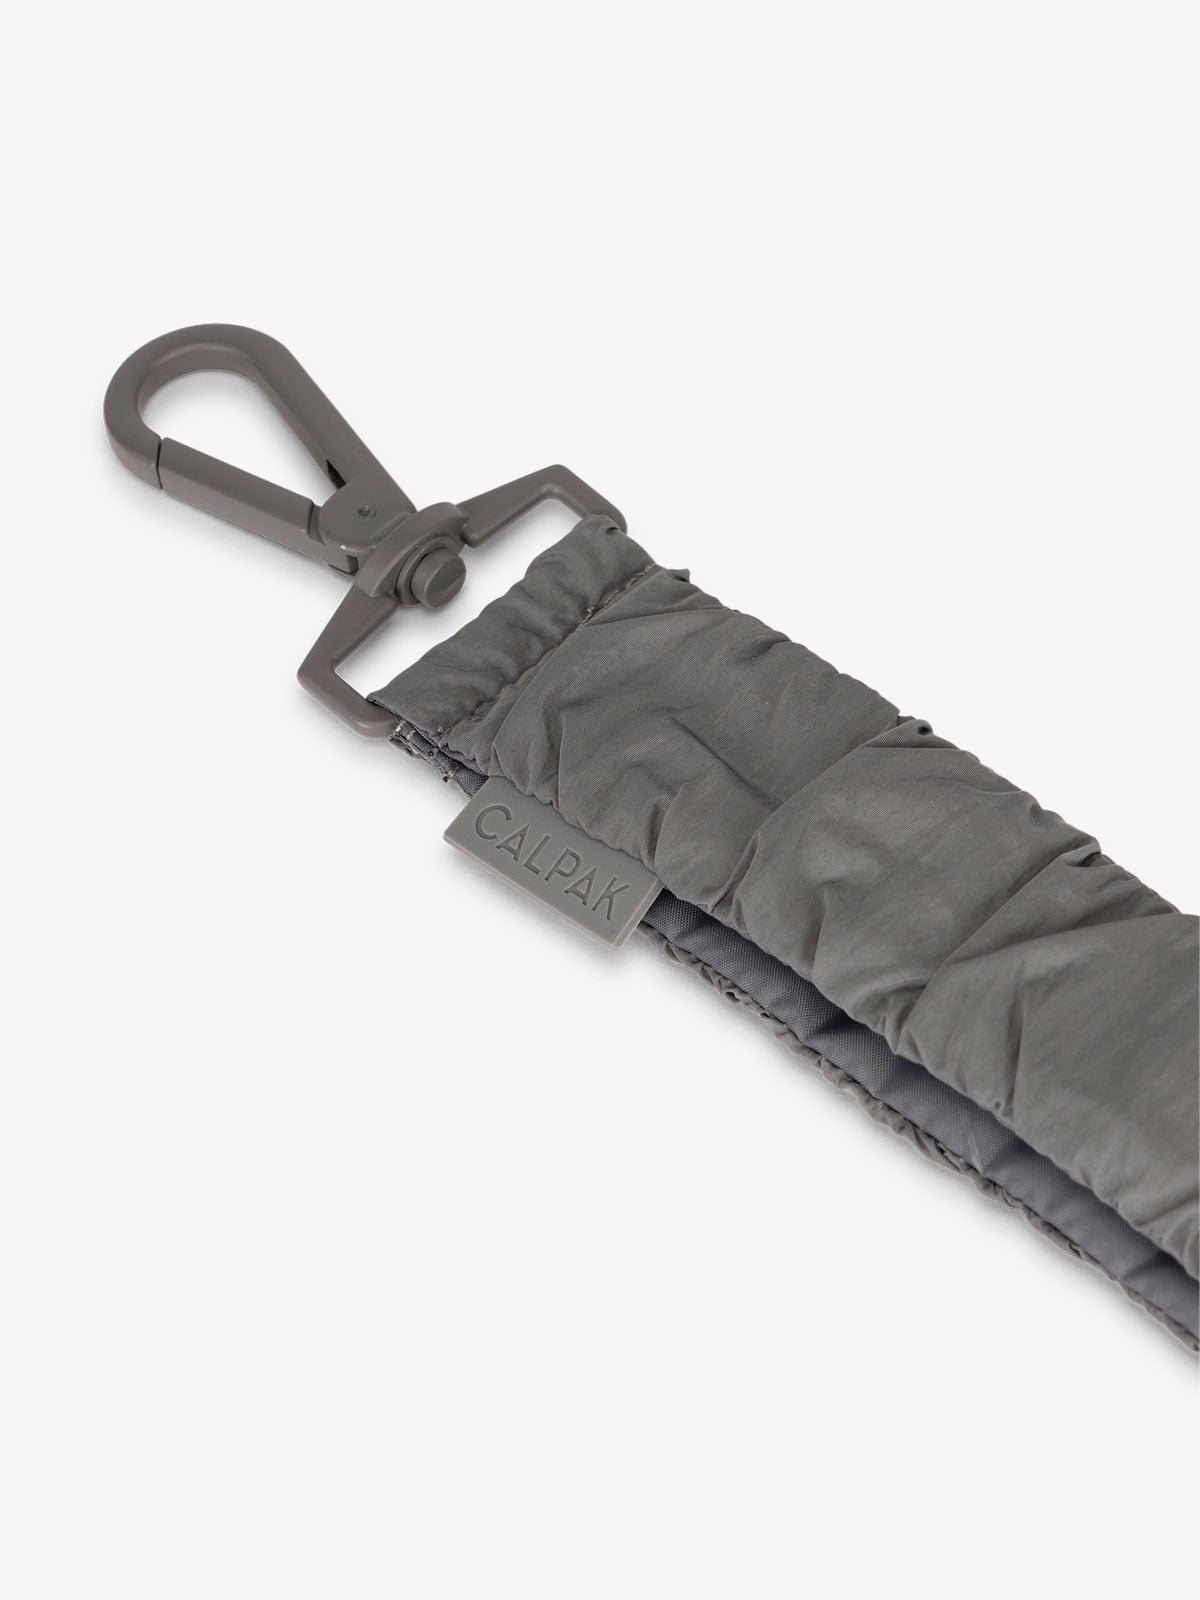 CALPAK diaper bag stroller straps with dog clips for d-rings in gray slate